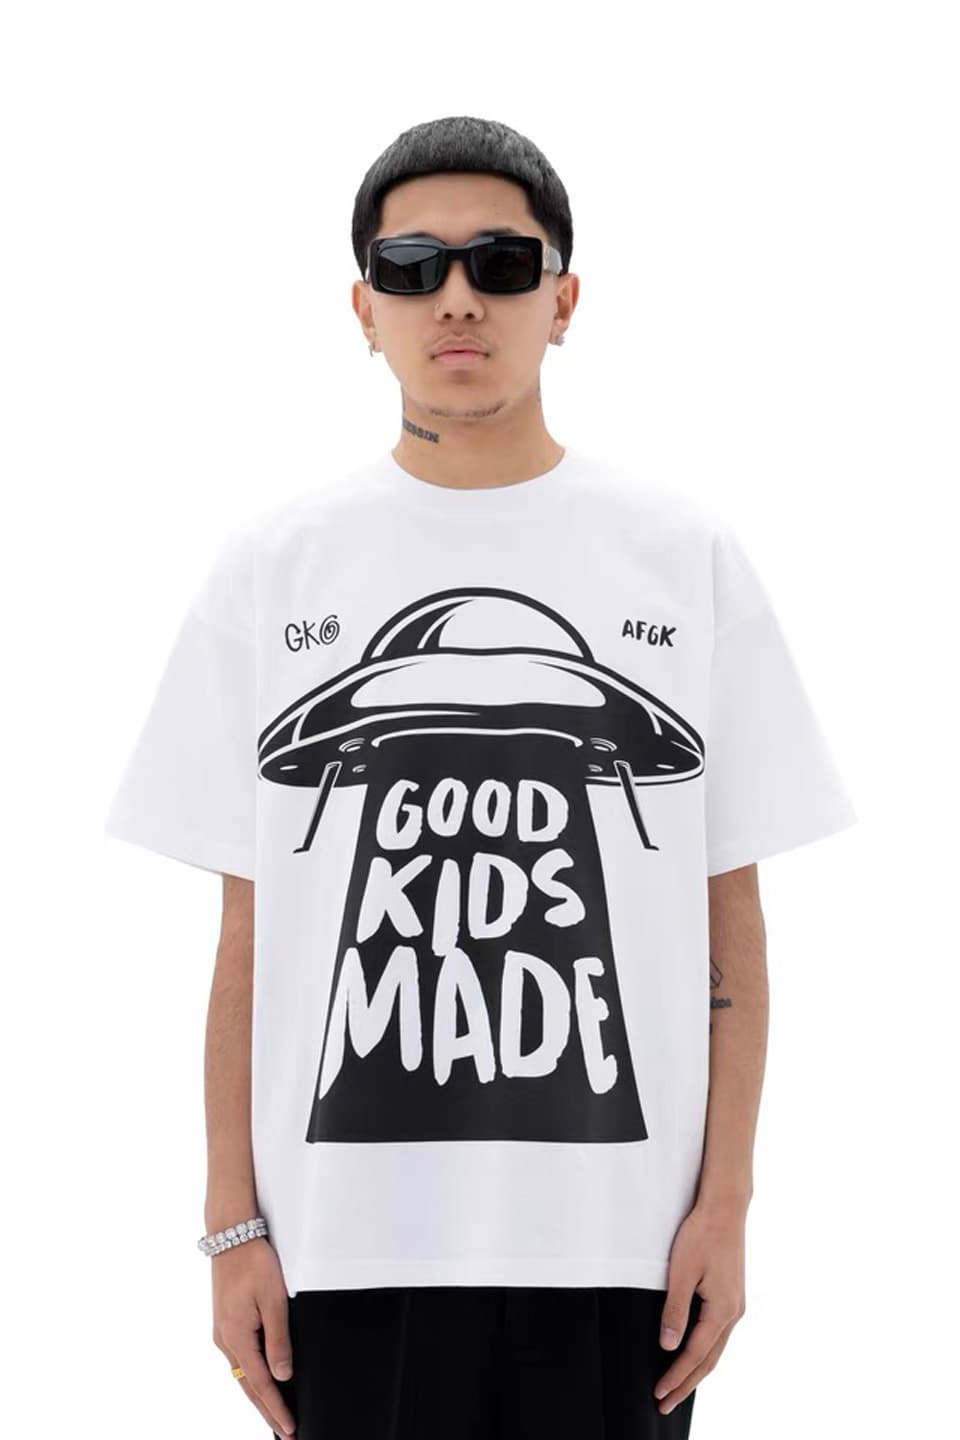 【XLサイズ】SUPPLIER サプライヤー UFO ブラック Tシャツ